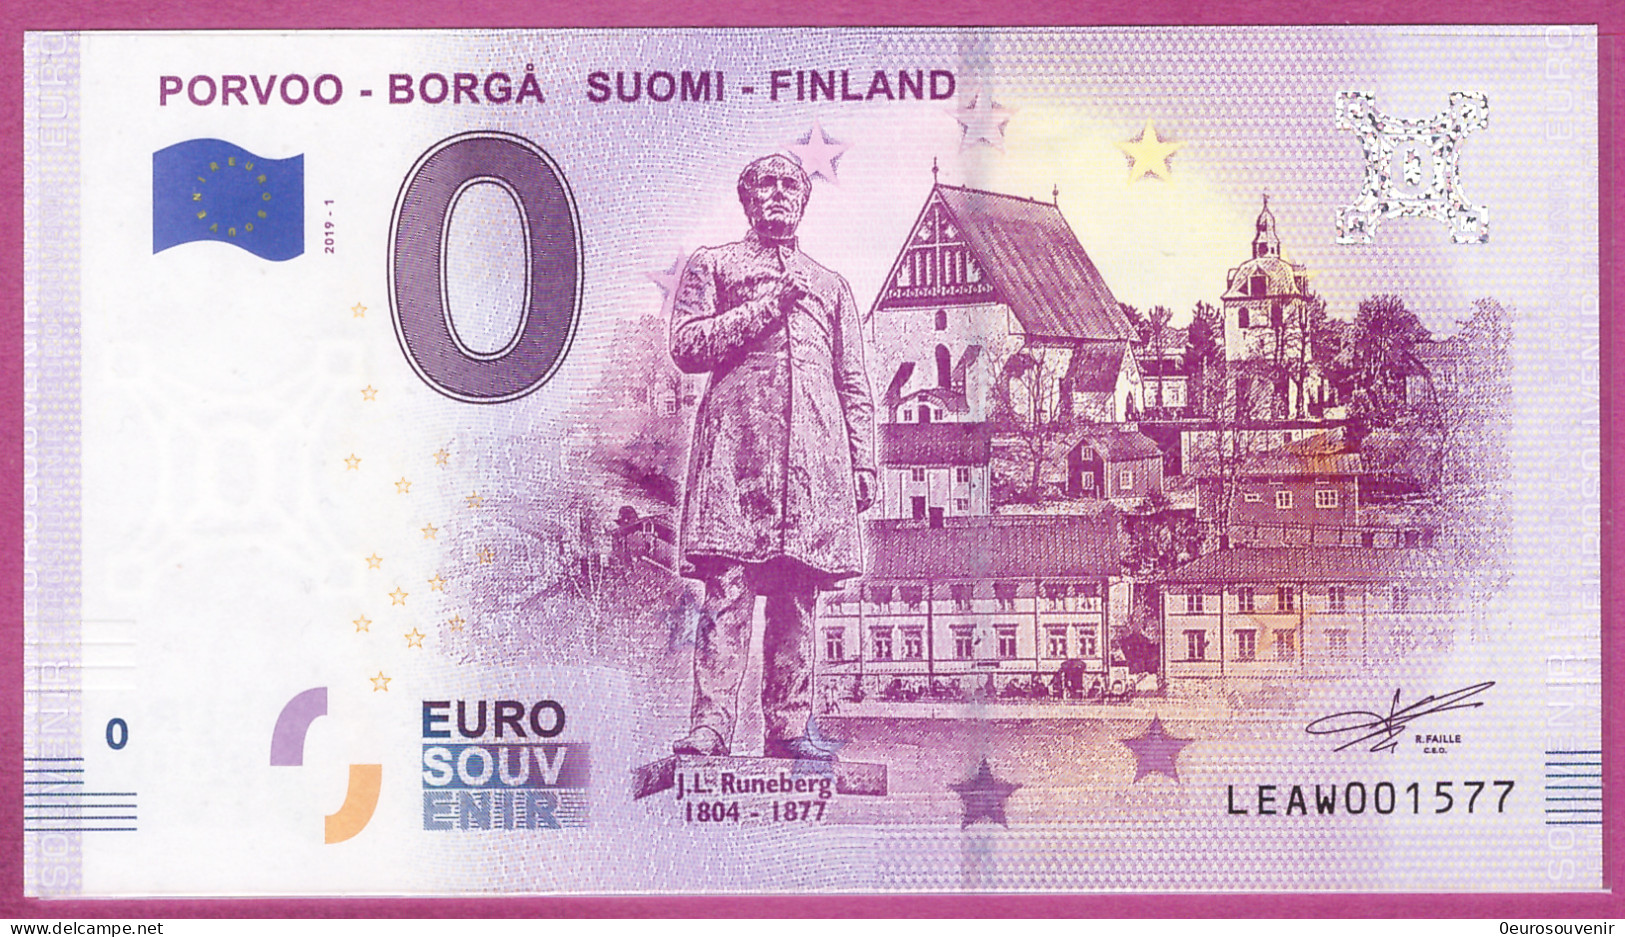 0-Euro LEAW 2019-1 PORVOO - BORGA SUOMI-FINLAND - RUNEBERG - Private Proofs / Unofficial